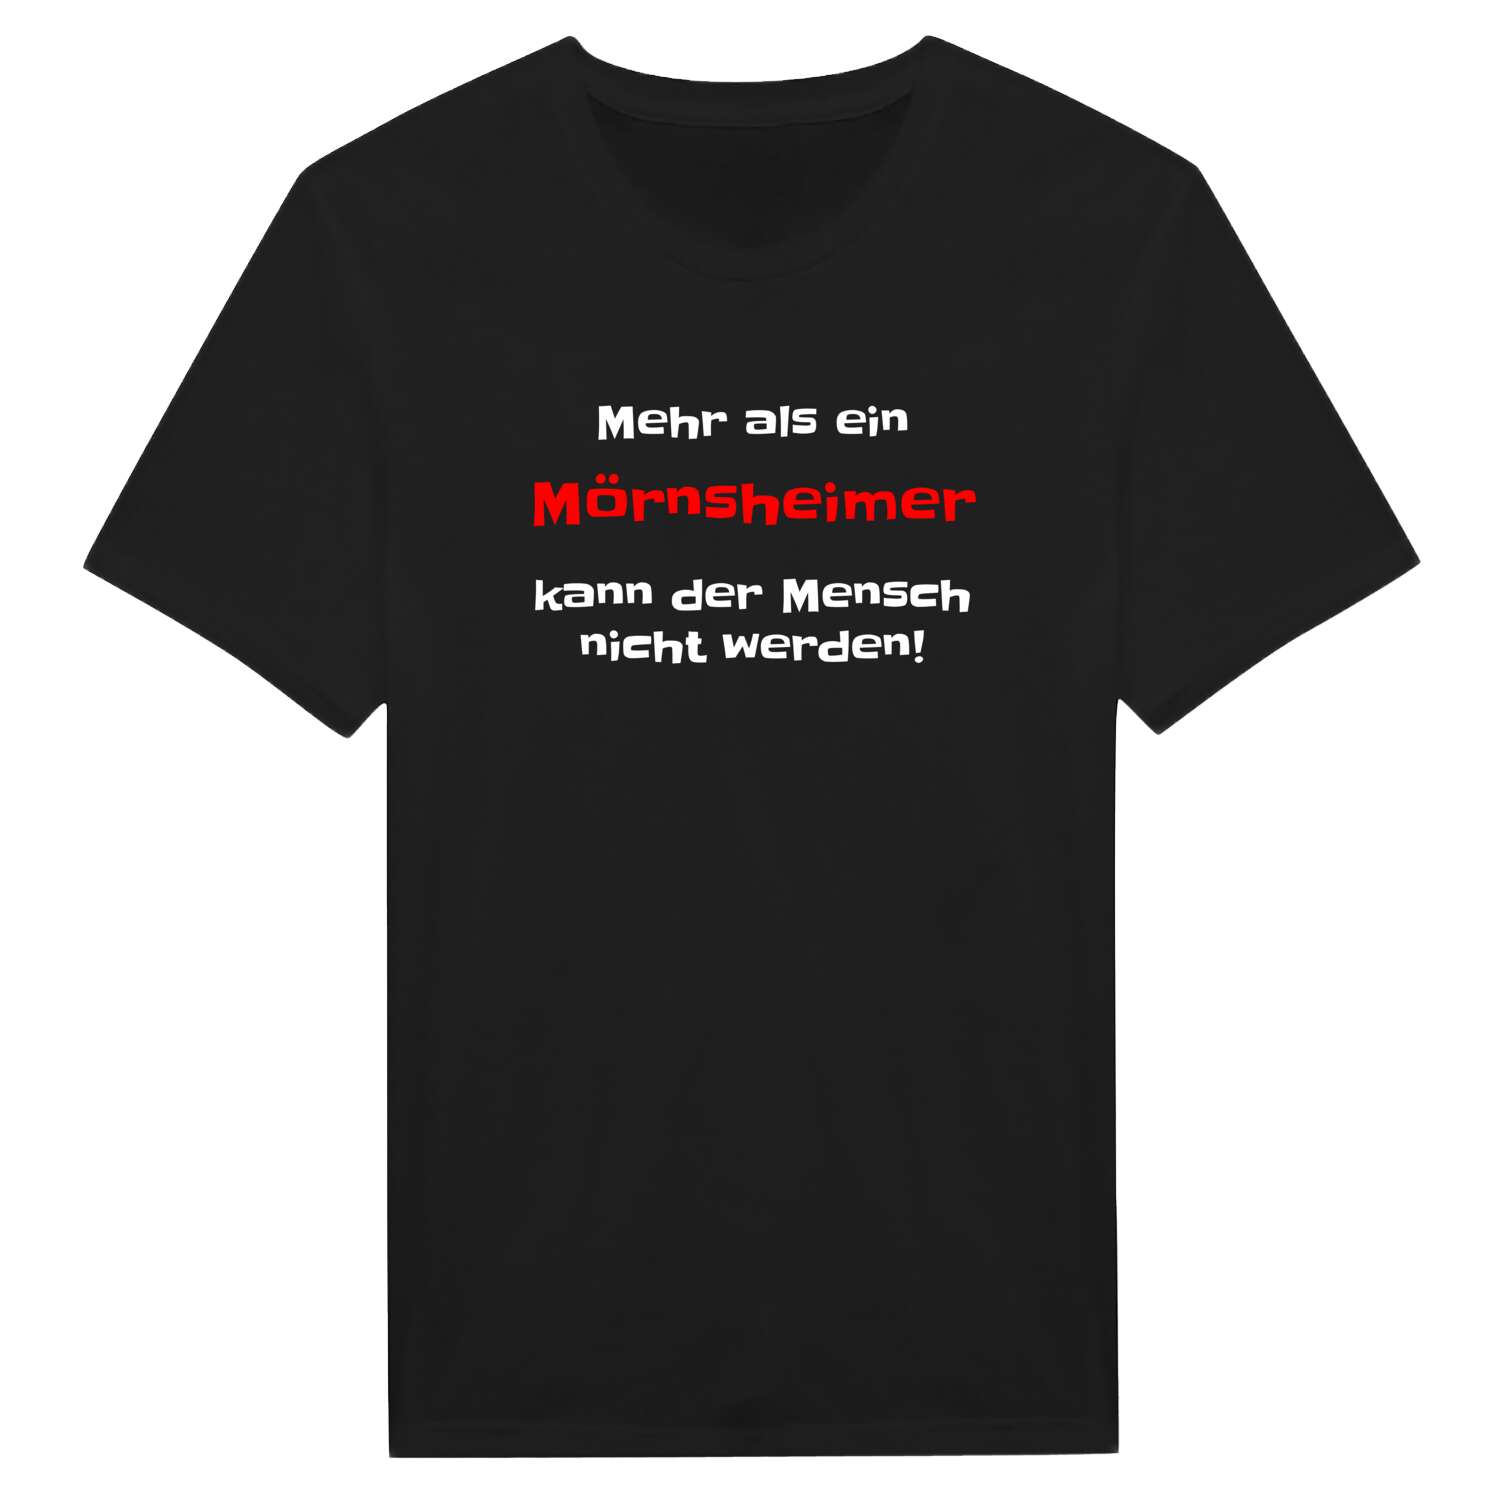 Mörnsheim T-Shirt »Mehr als ein«